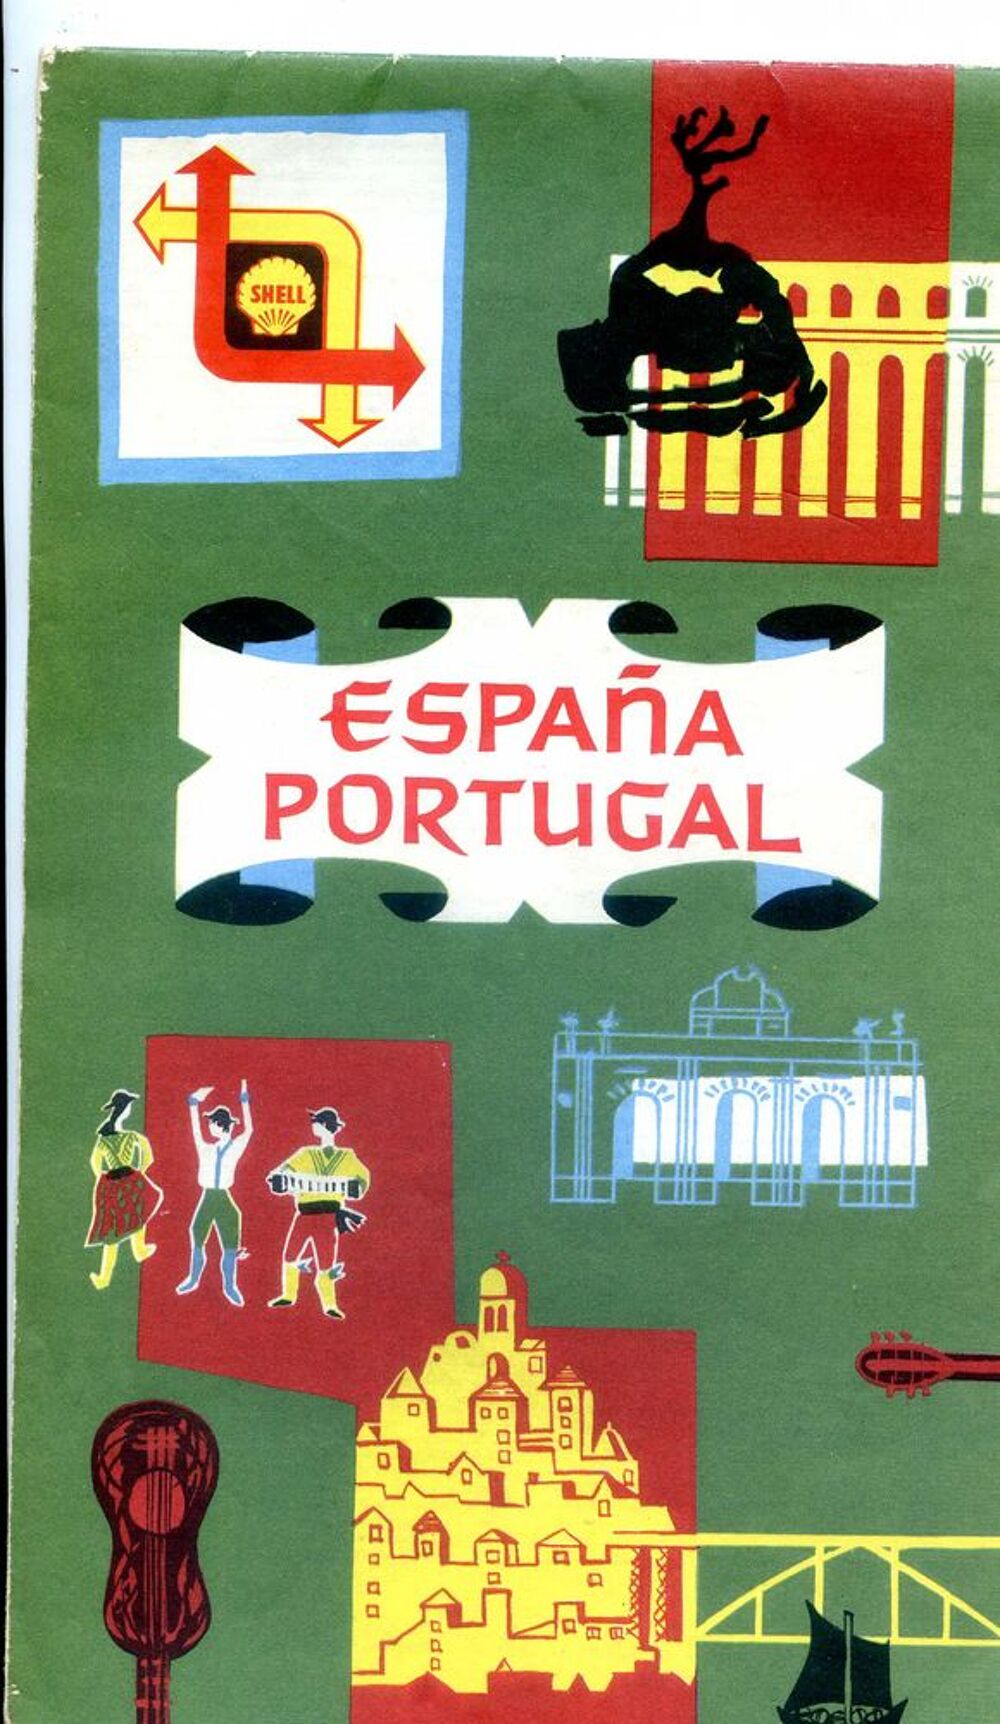 CARTE SHELL ESPAGNE PORTUGAL 